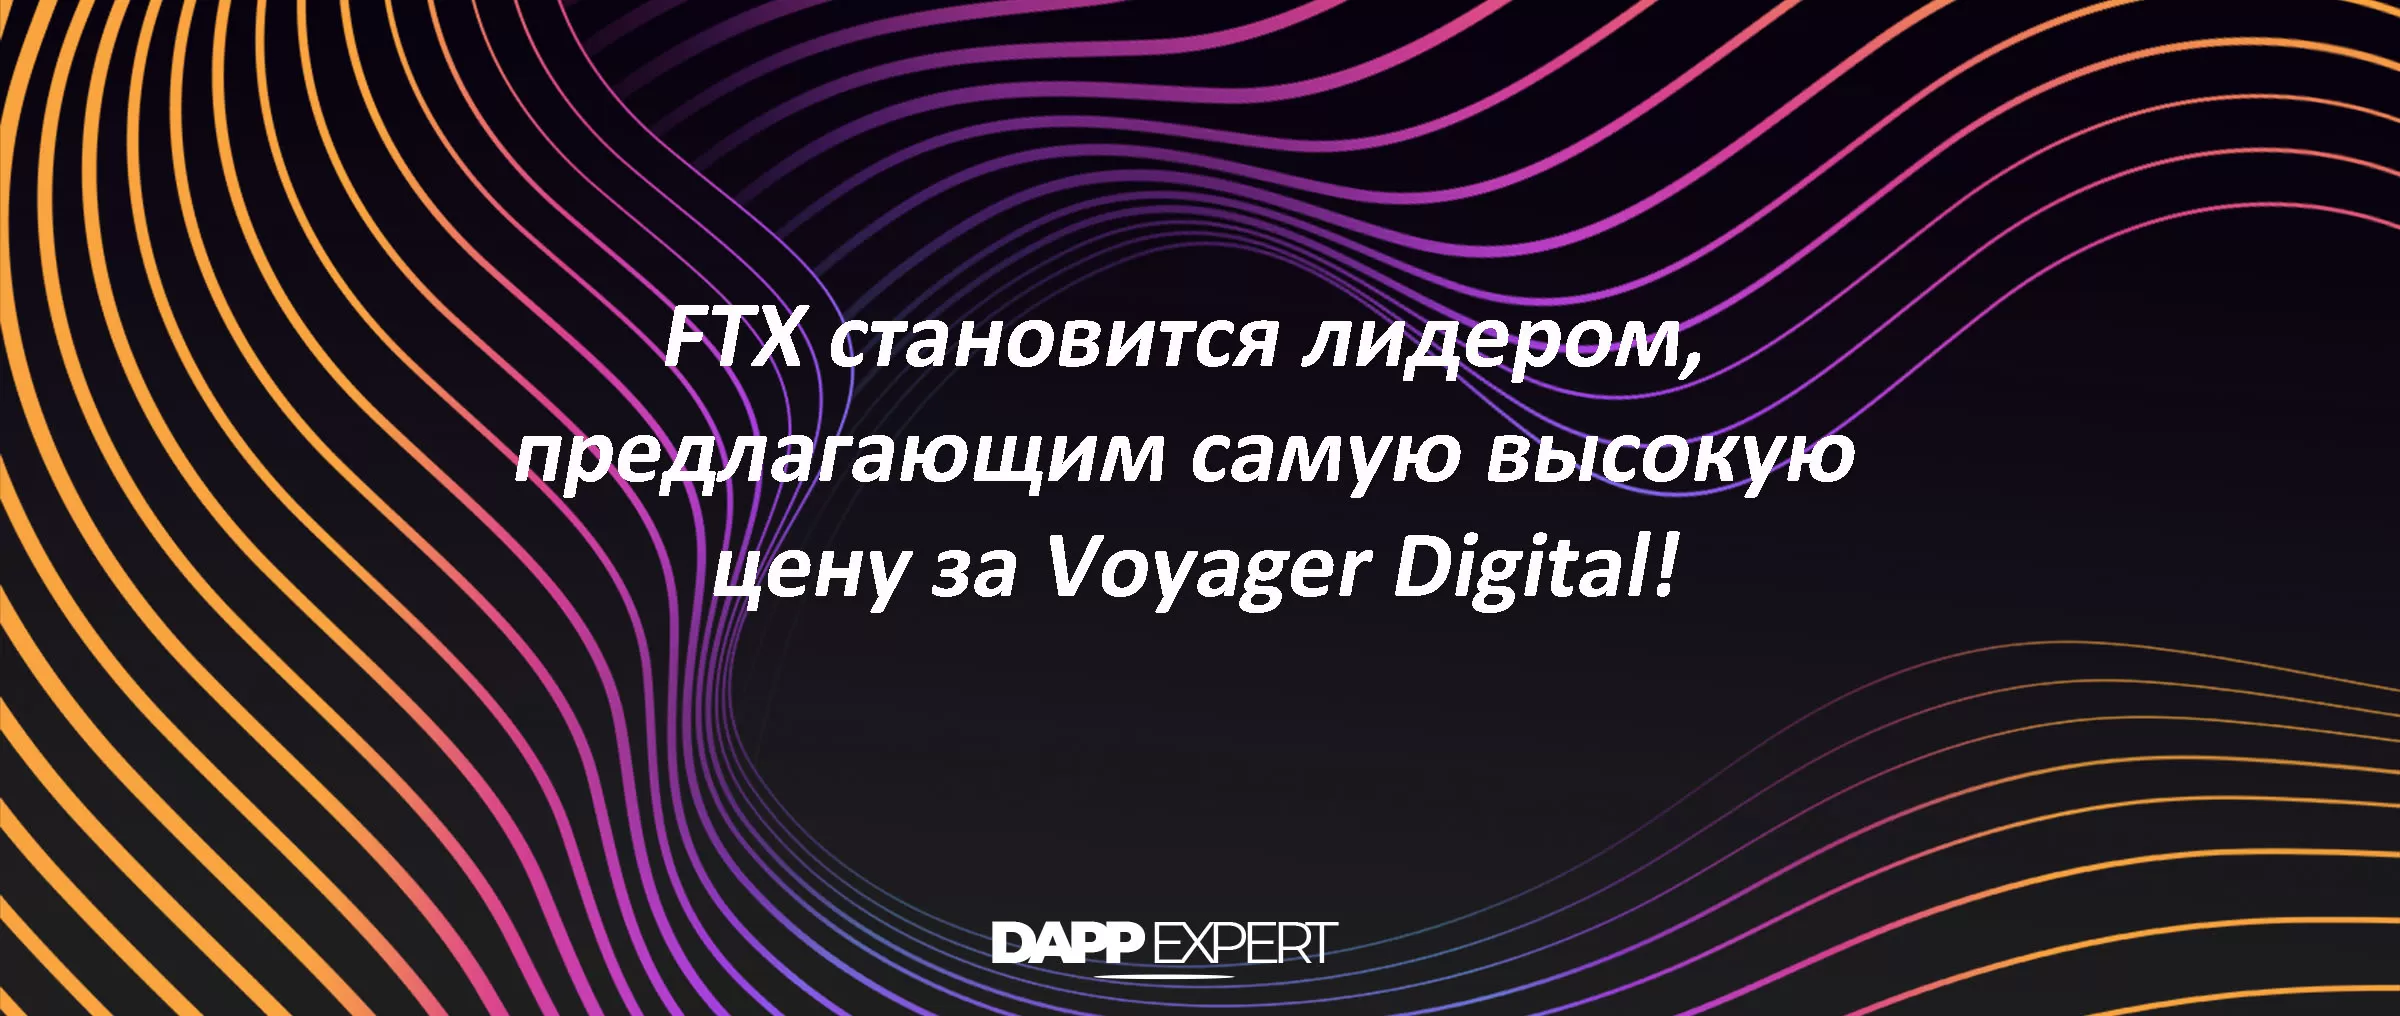 FTX становится лидером, предлагающим самую высокую цену за Voyager Digital!